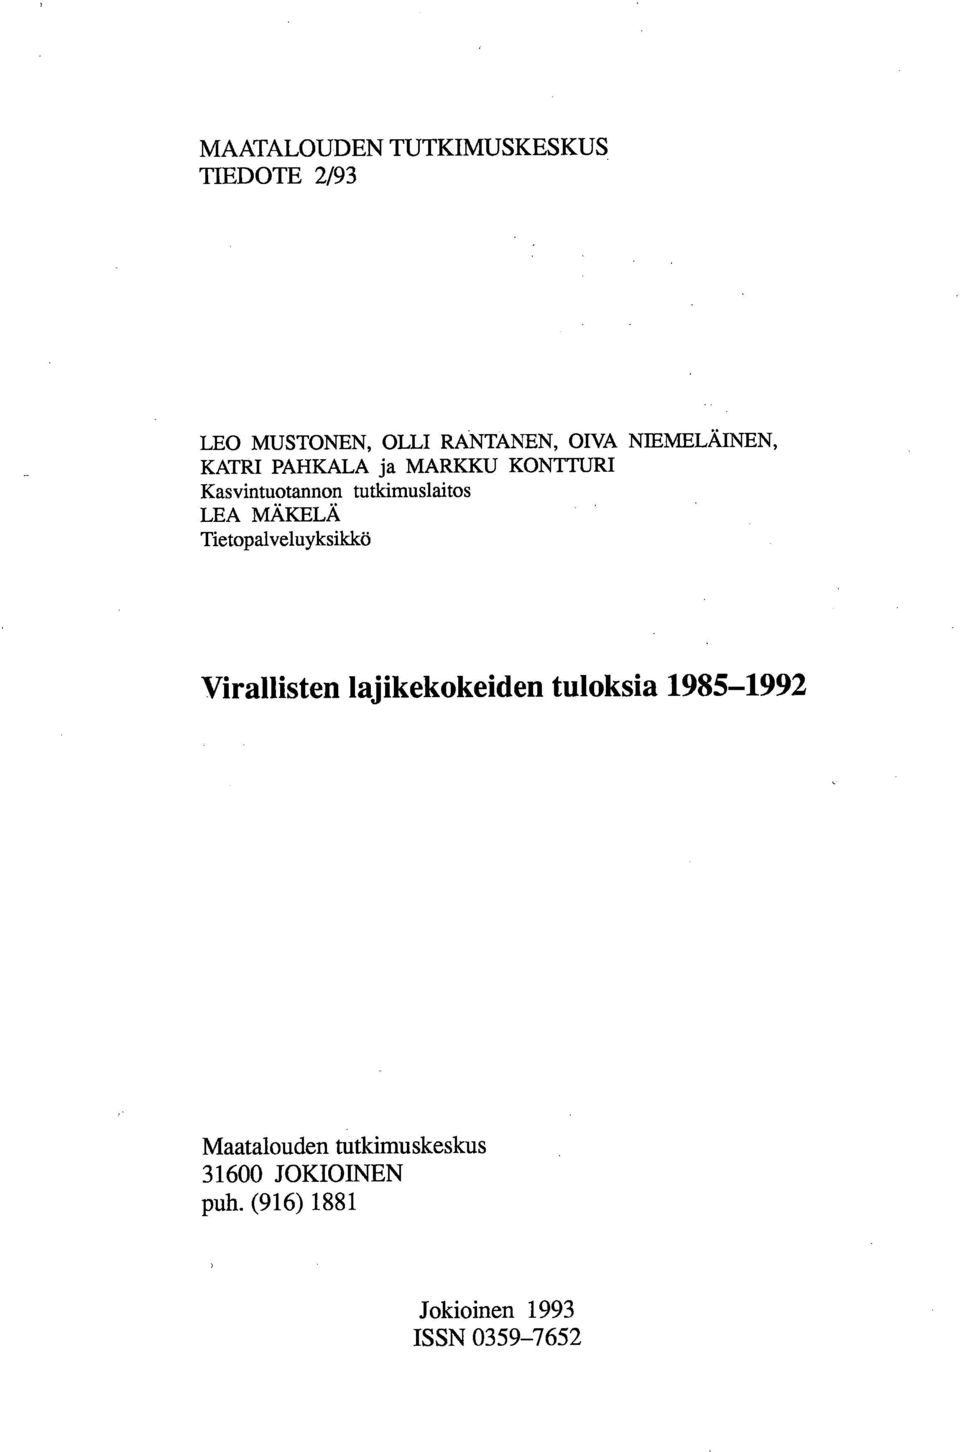 LEA MÄKELÄ Tietopalveluyksikkö Virallisten lajikekokeiden tuloksia 1985-1992